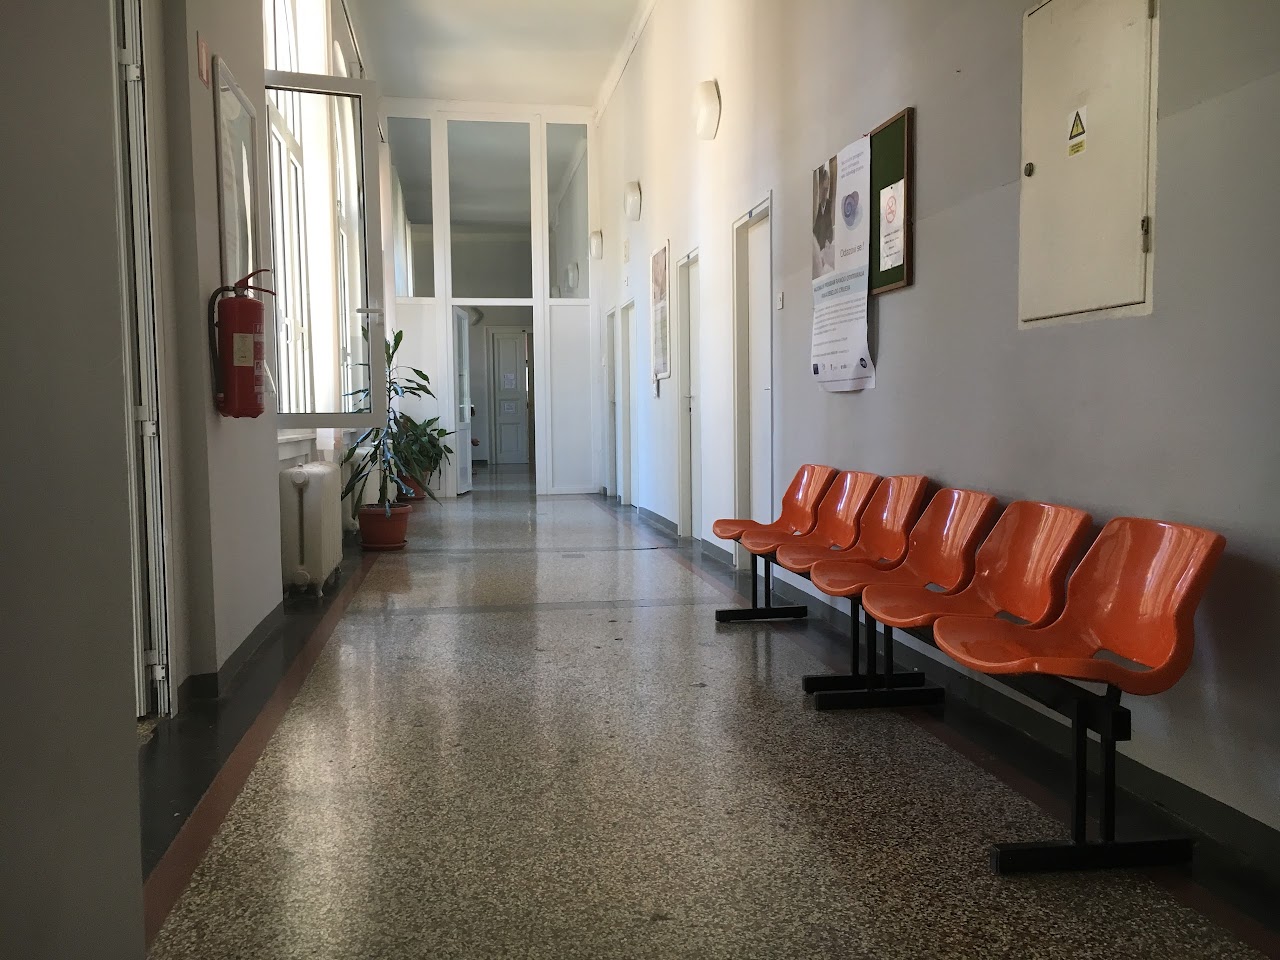 Photo of Istrian Health center – Pula-Pola Pula COVID Testing at Flanatička ul. 27, 52100, Pula, Croatia